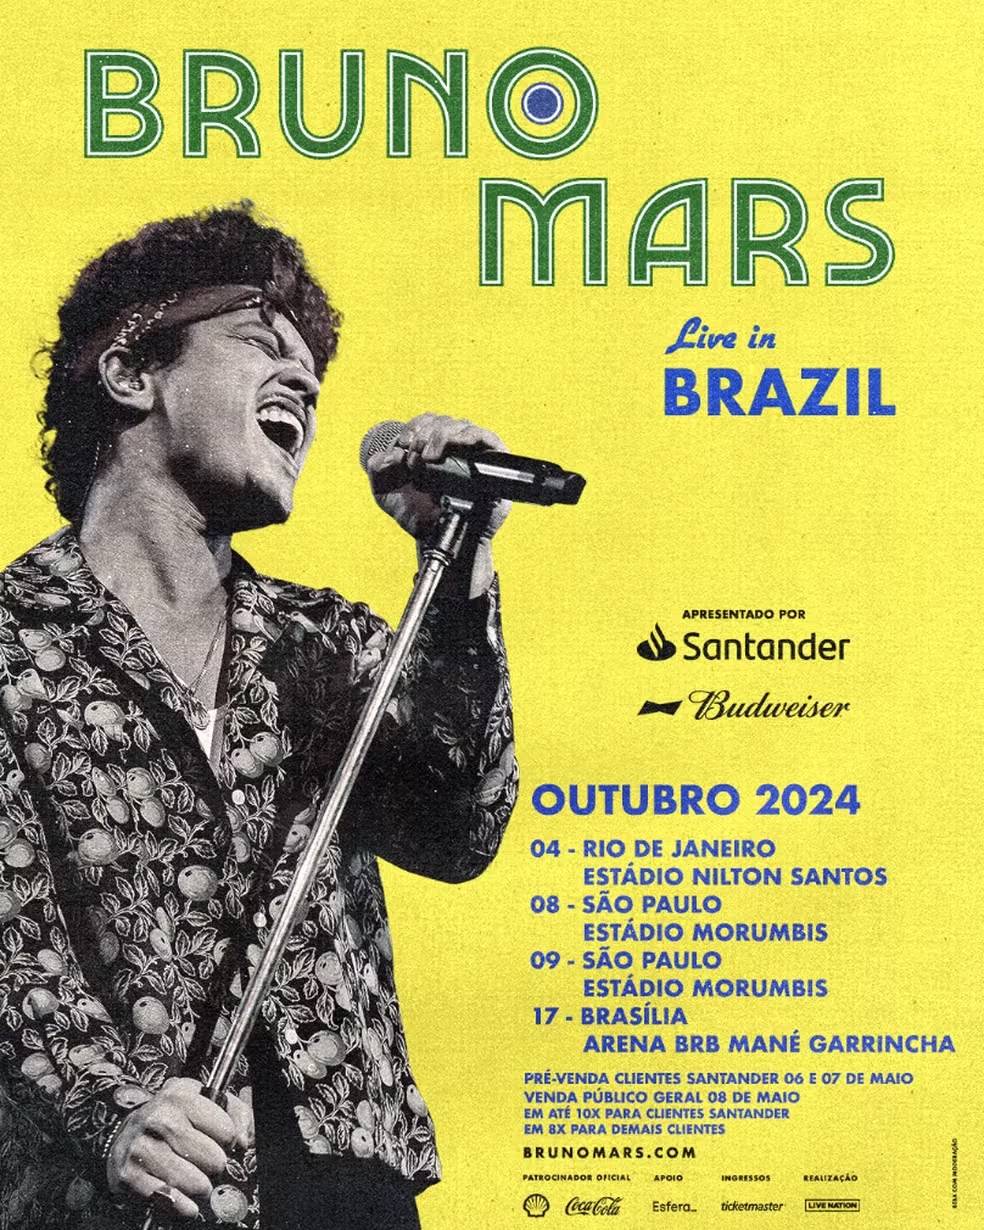 bruno-mars-brasil-shows